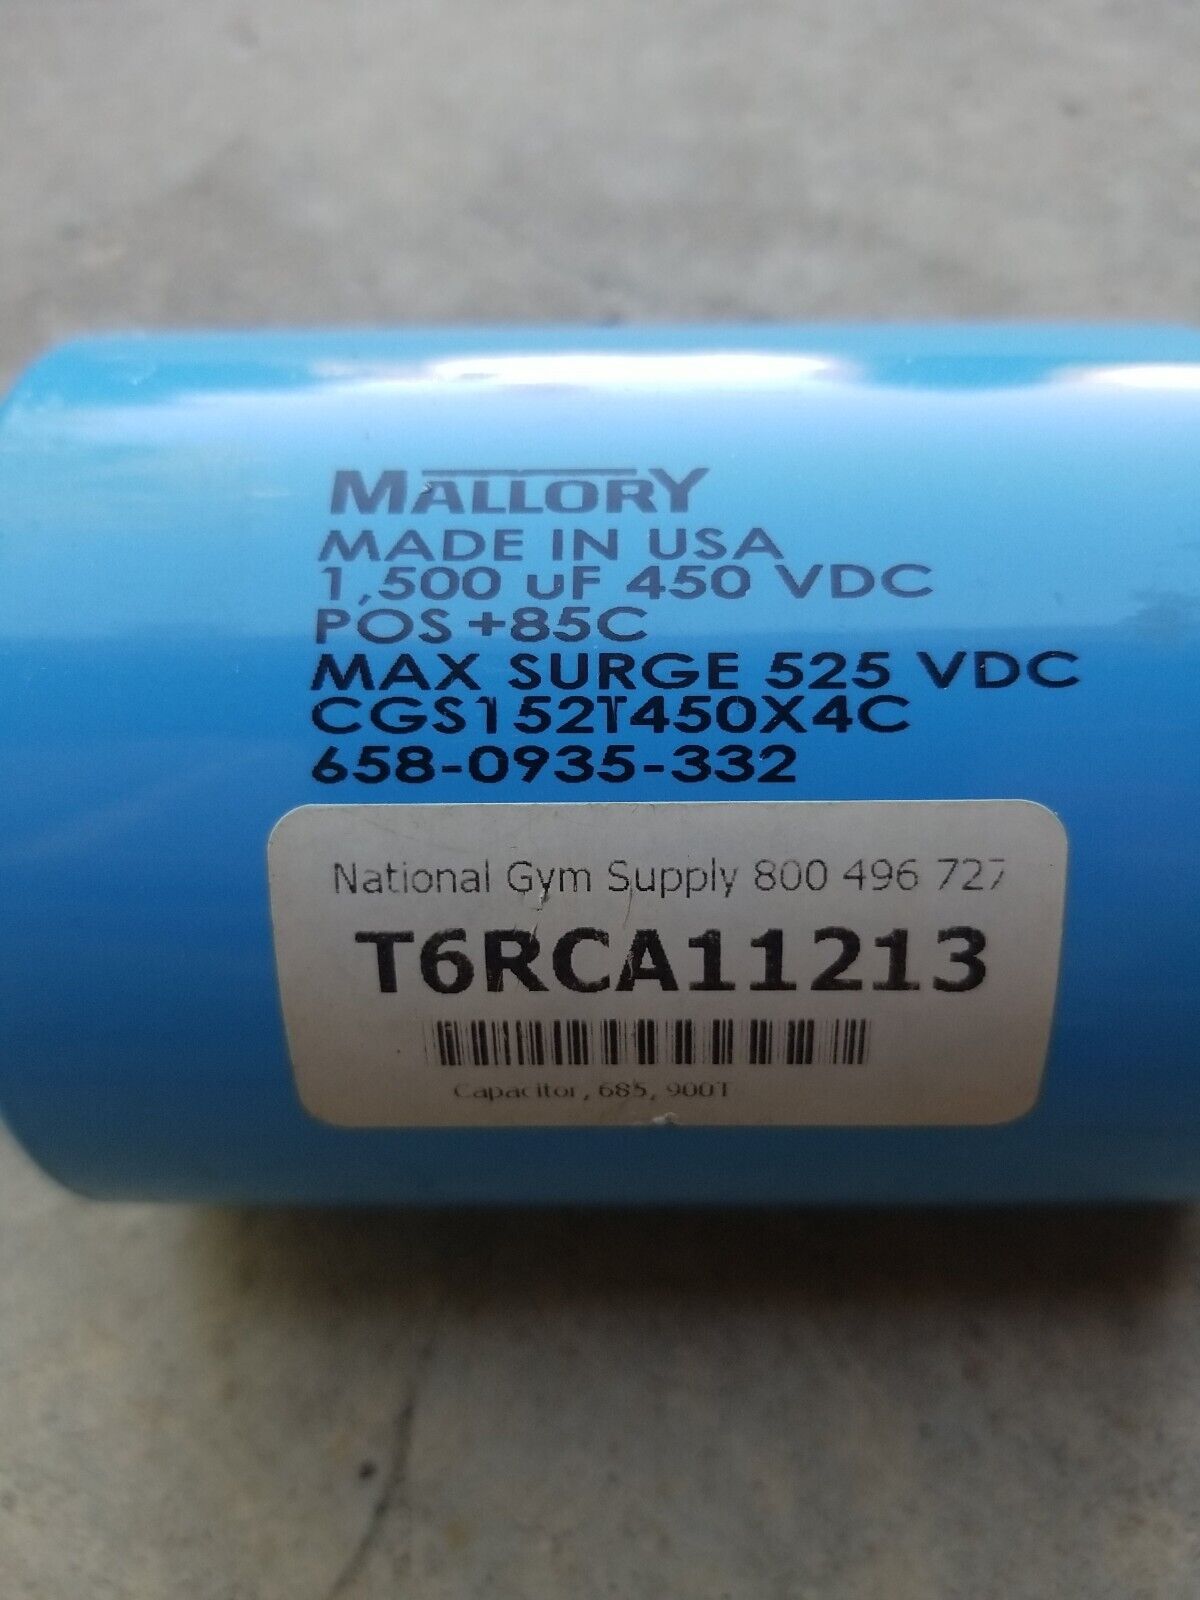 Mallory Cgs152T450X4C 1500 Uf 450 Vdc Capacitor